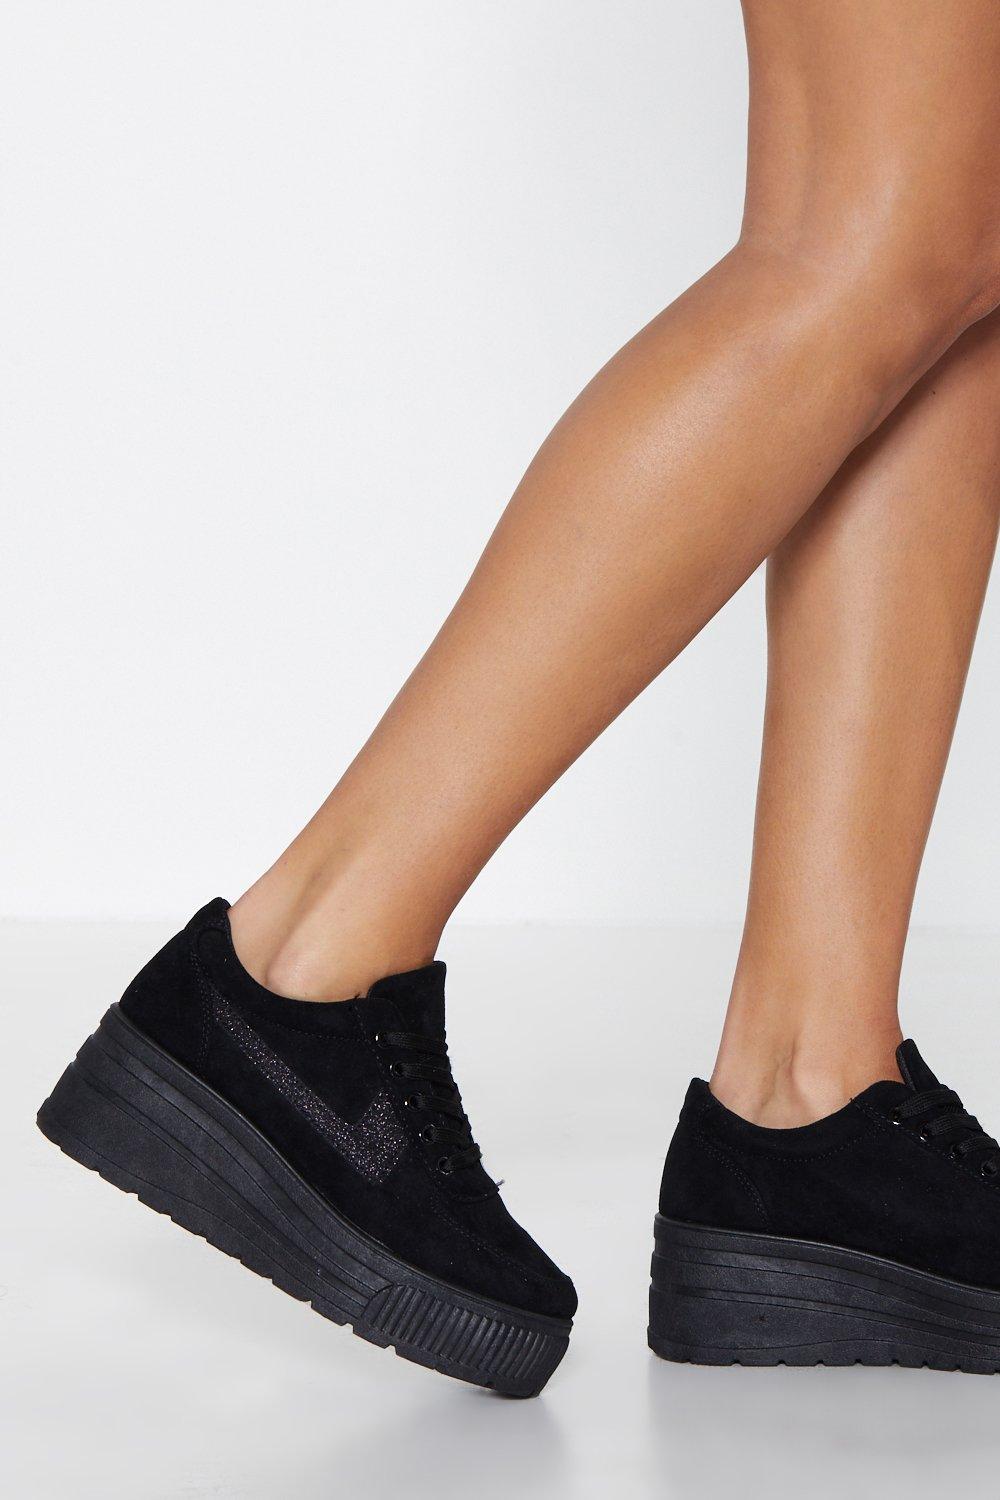 platform sneakers all black